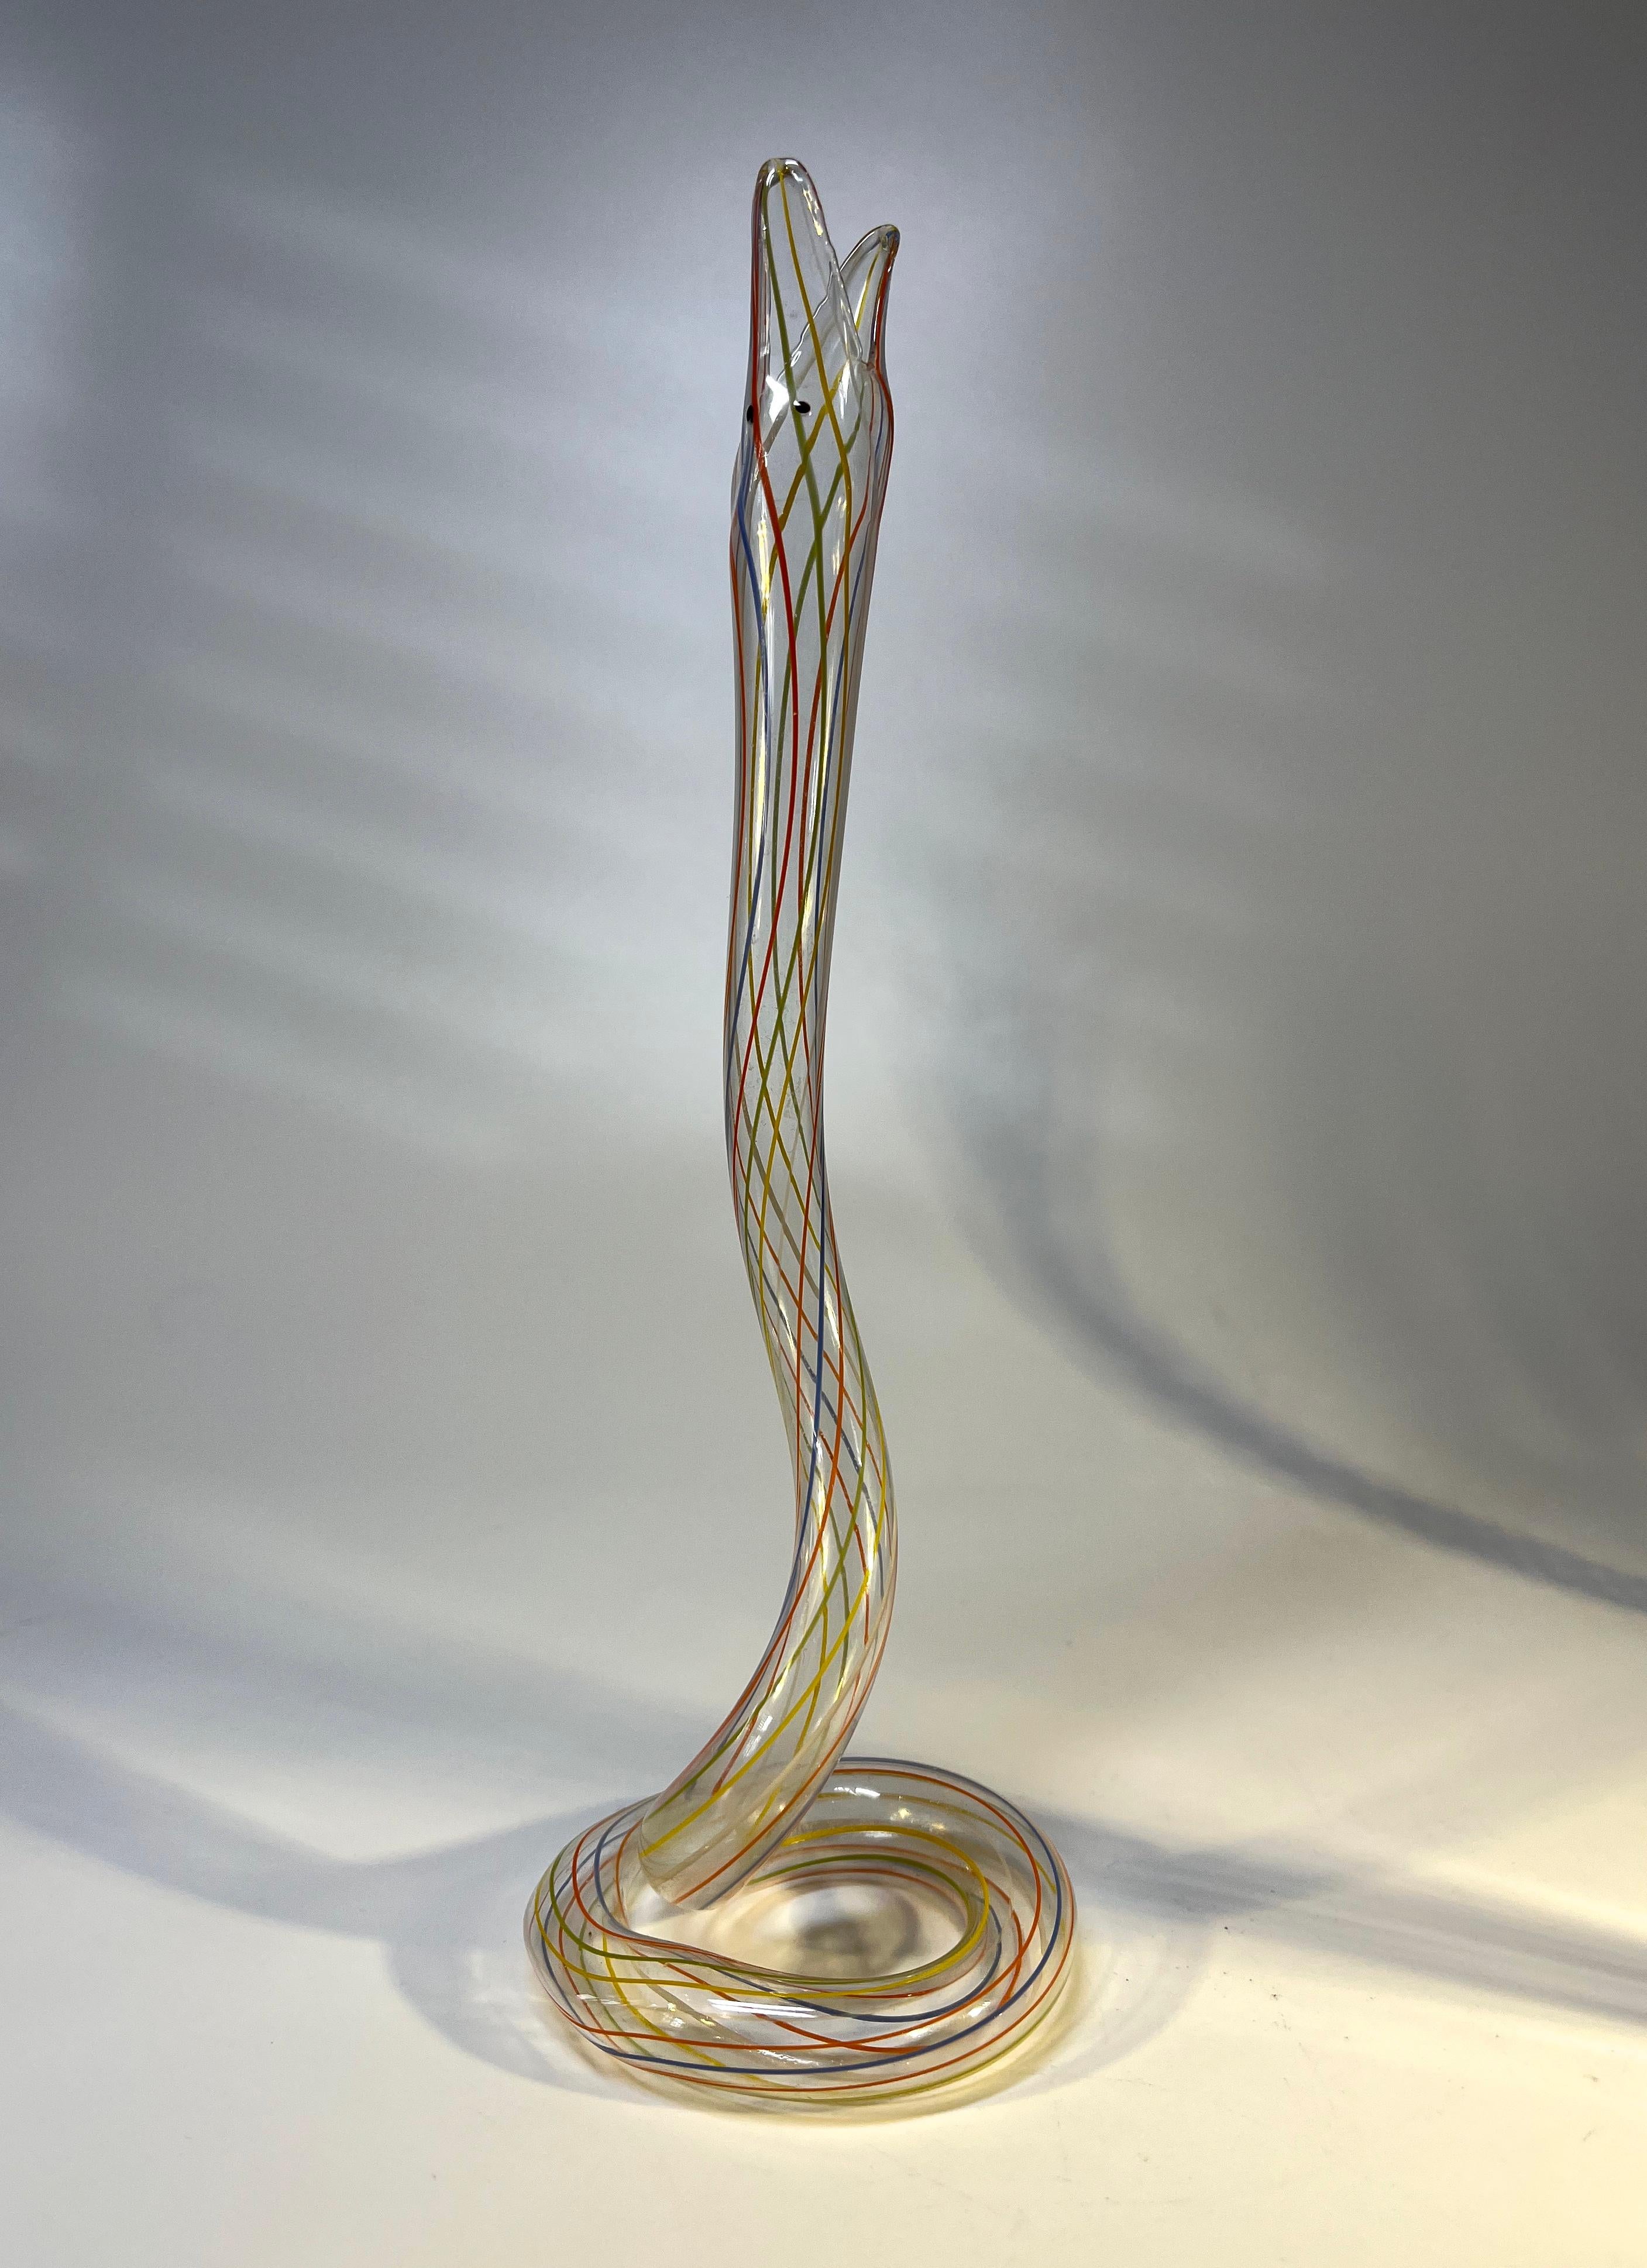 Slither of Whimsical Bimini Glass Lampwork Art Deco Snake Vases, c1920-1930 For Sale 4